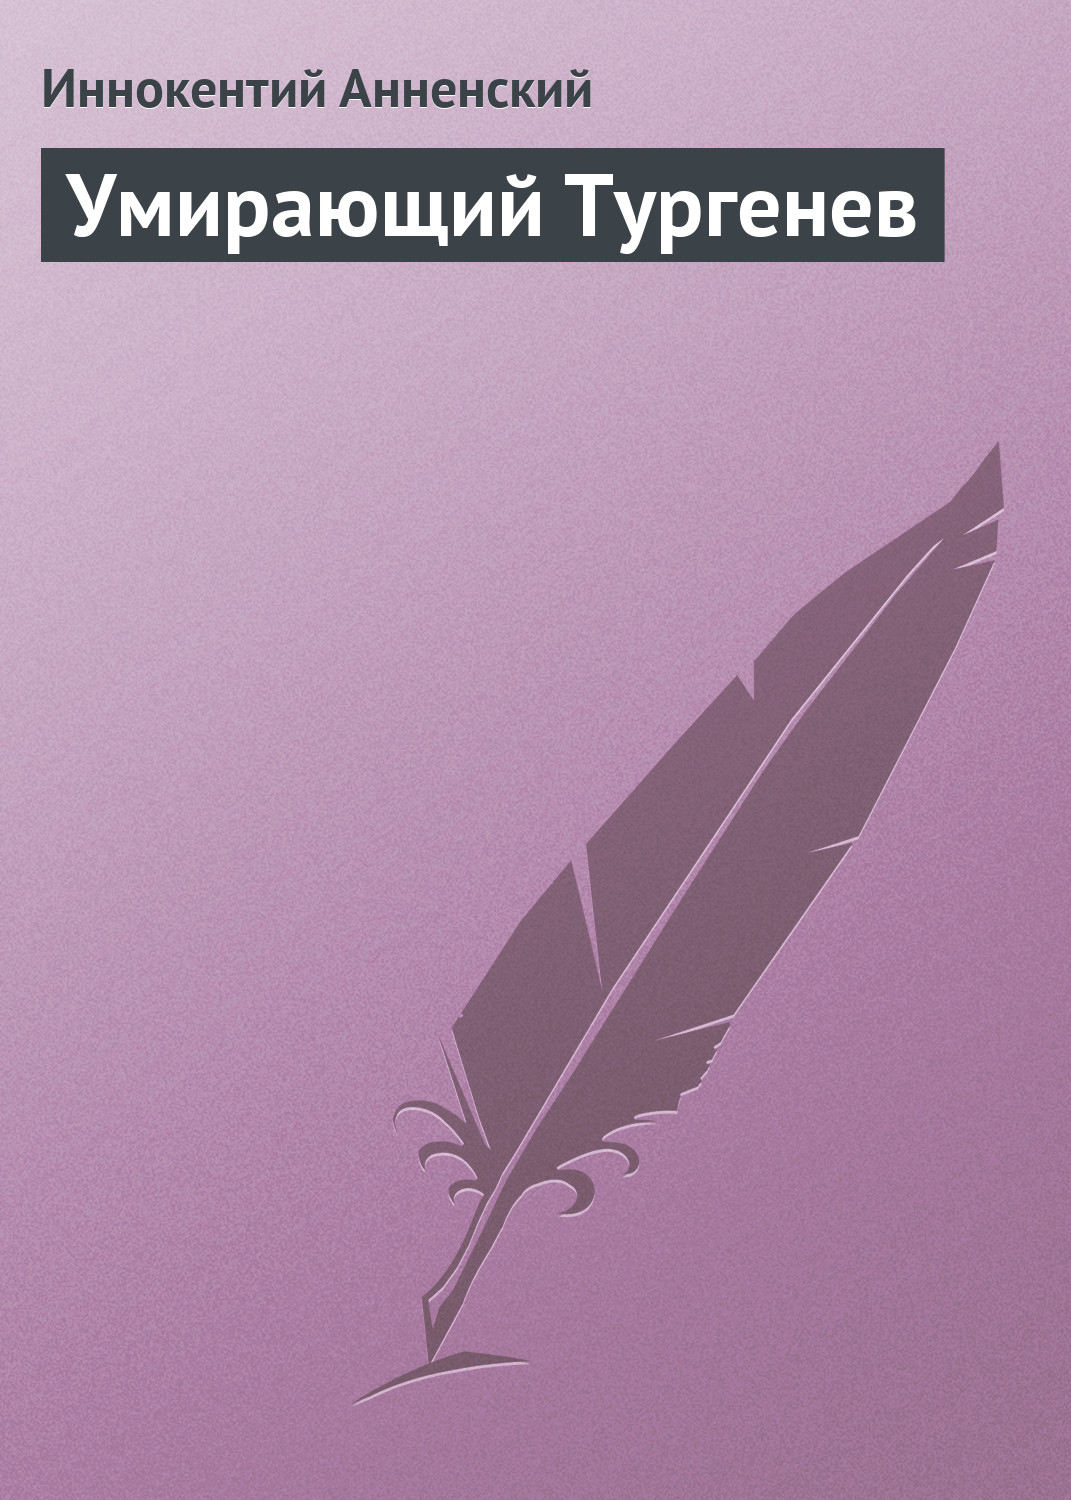 Книга Умирающий Тургенев из серии , созданная Иннокентий Анненский, может относится к жанру Критика. Стоимость книги Умирающий Тургенев  с идентификатором 2824655 составляет 9.99 руб.